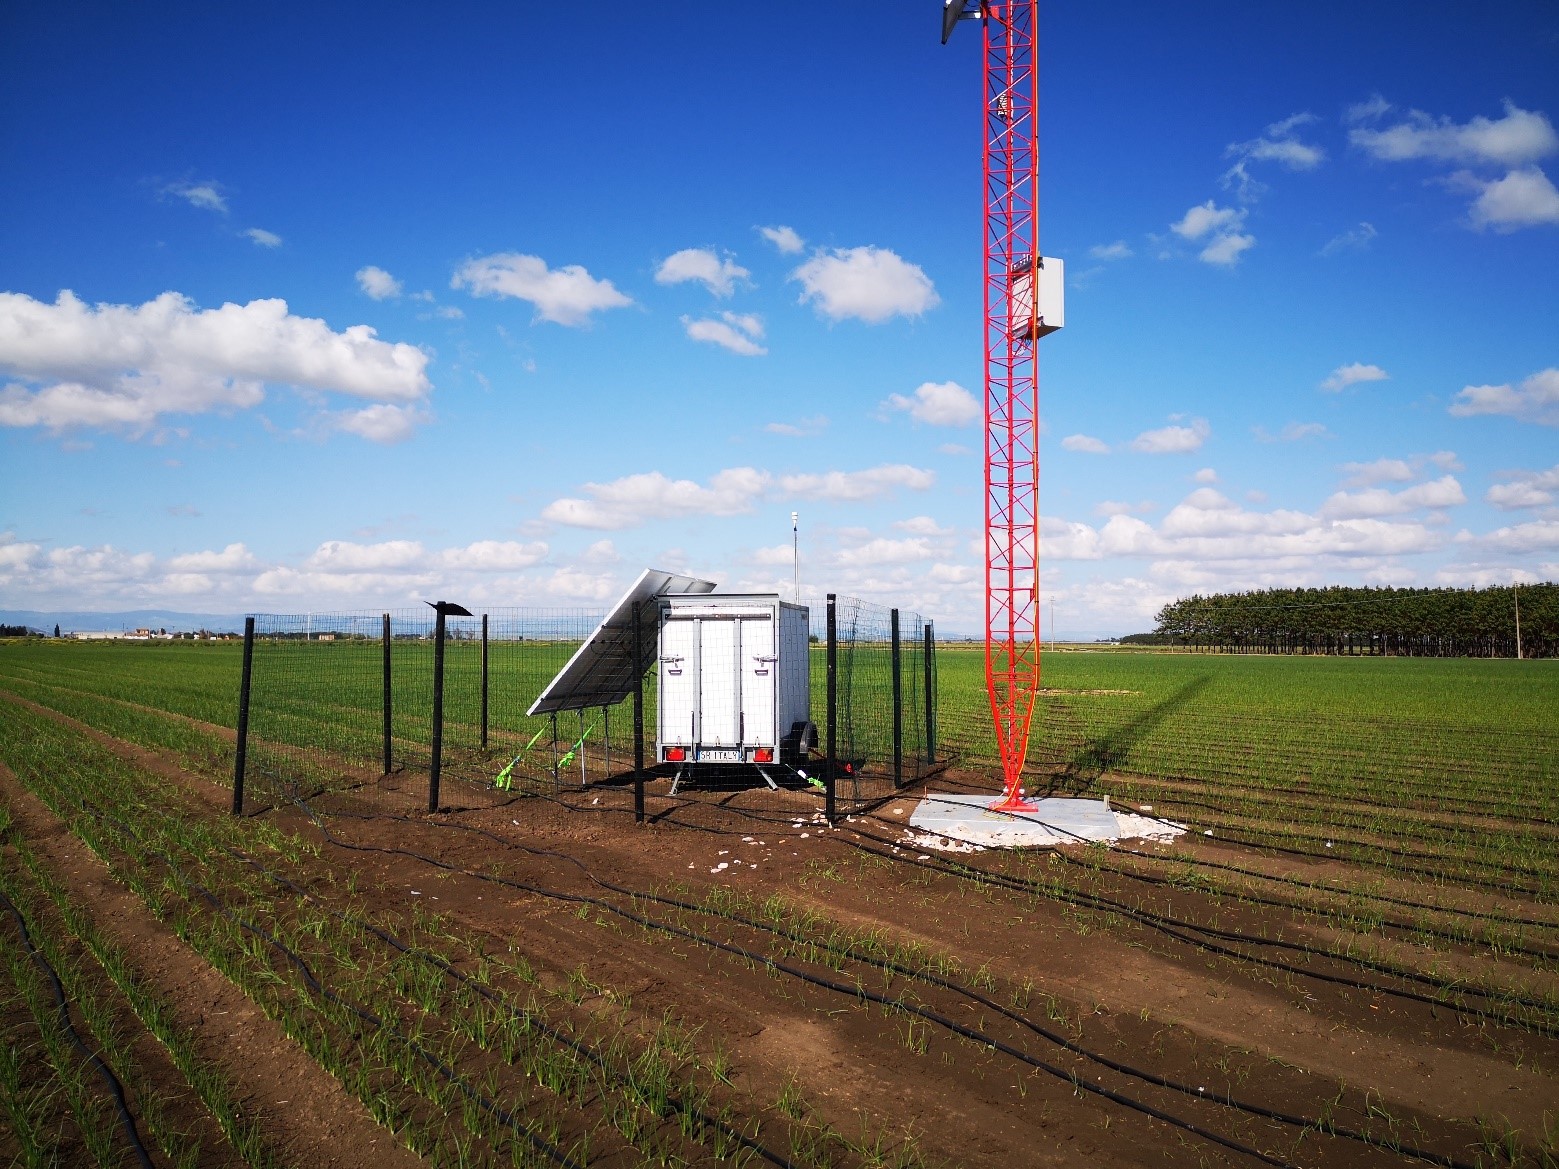 ZX 300 wind Lidar deployed in mobile trailer to validate 50 metre met mast